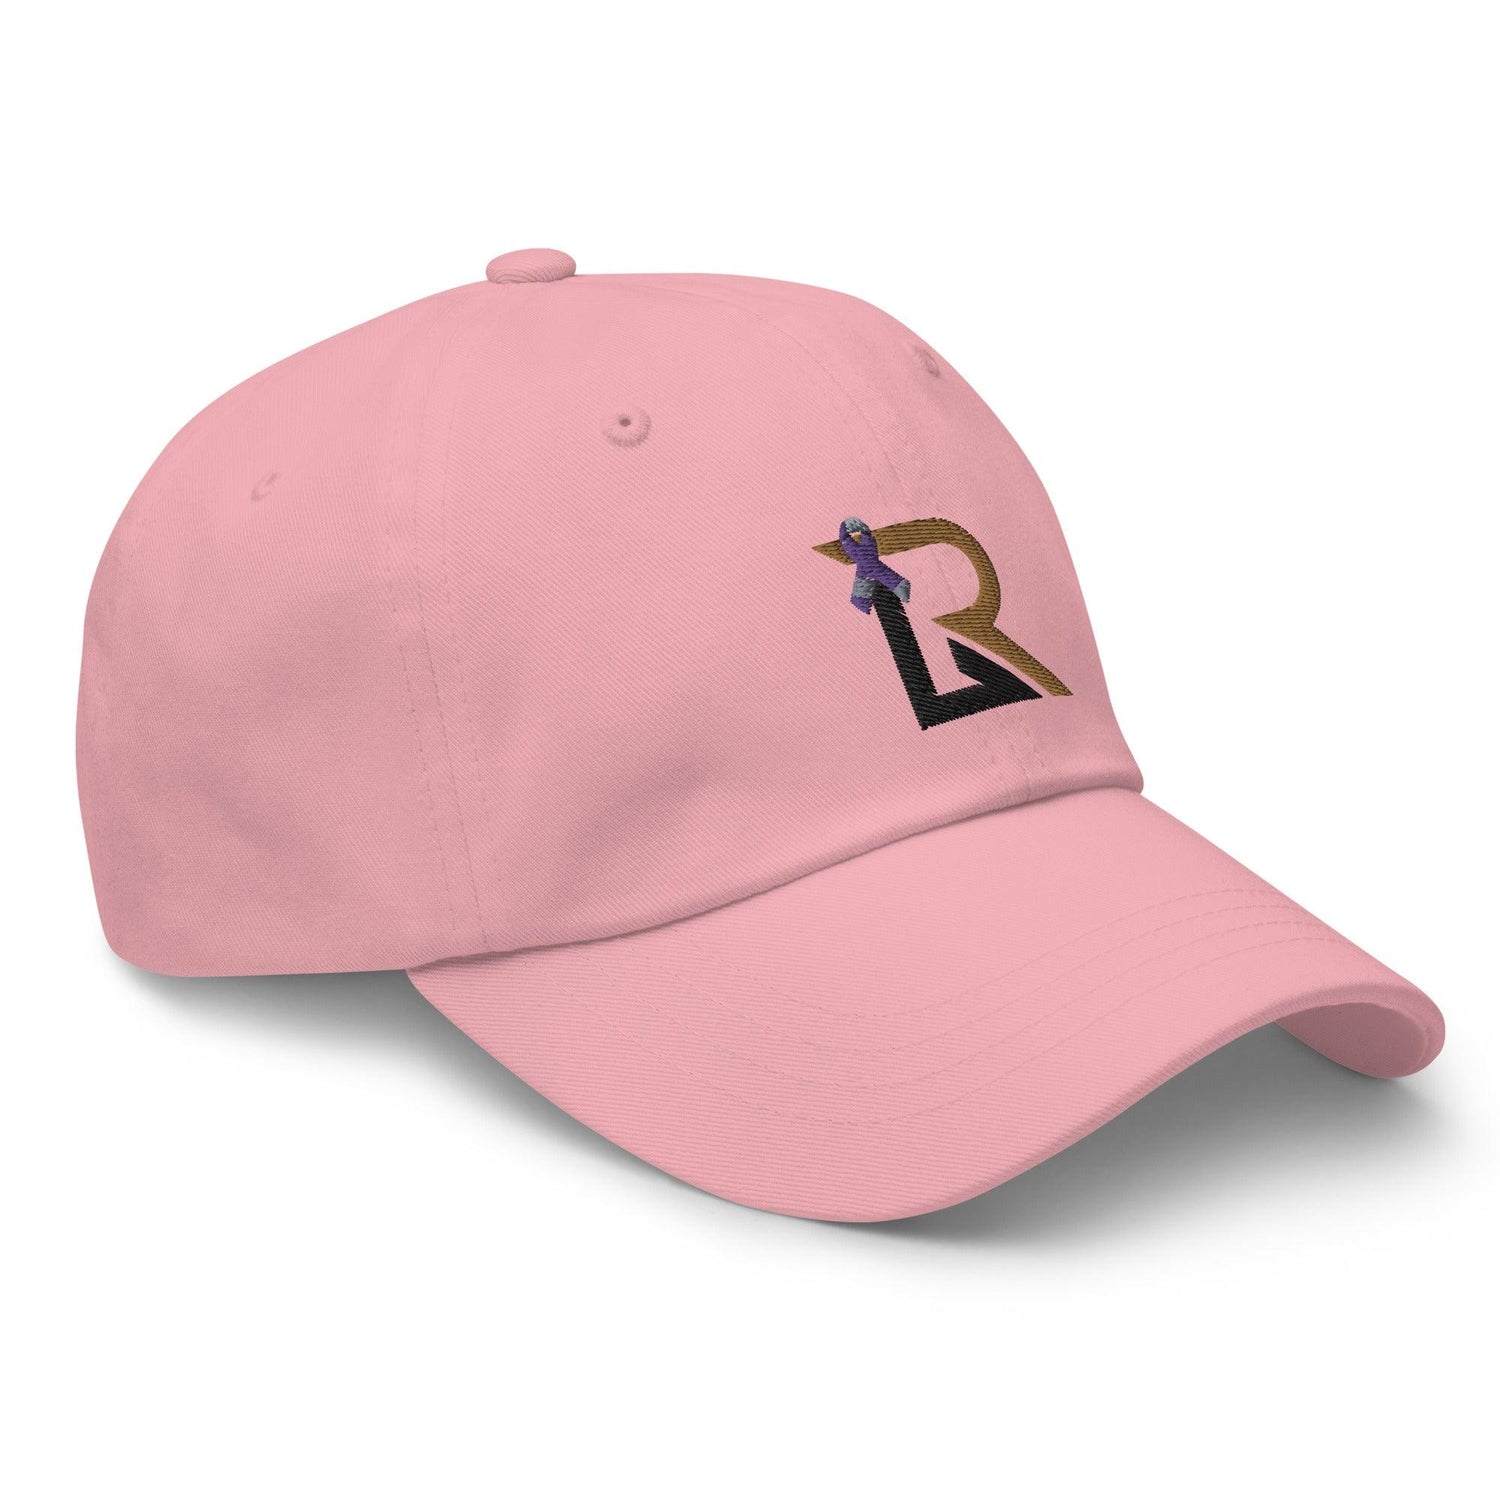 Rhett Lowder “RL” hat - Fan Arch